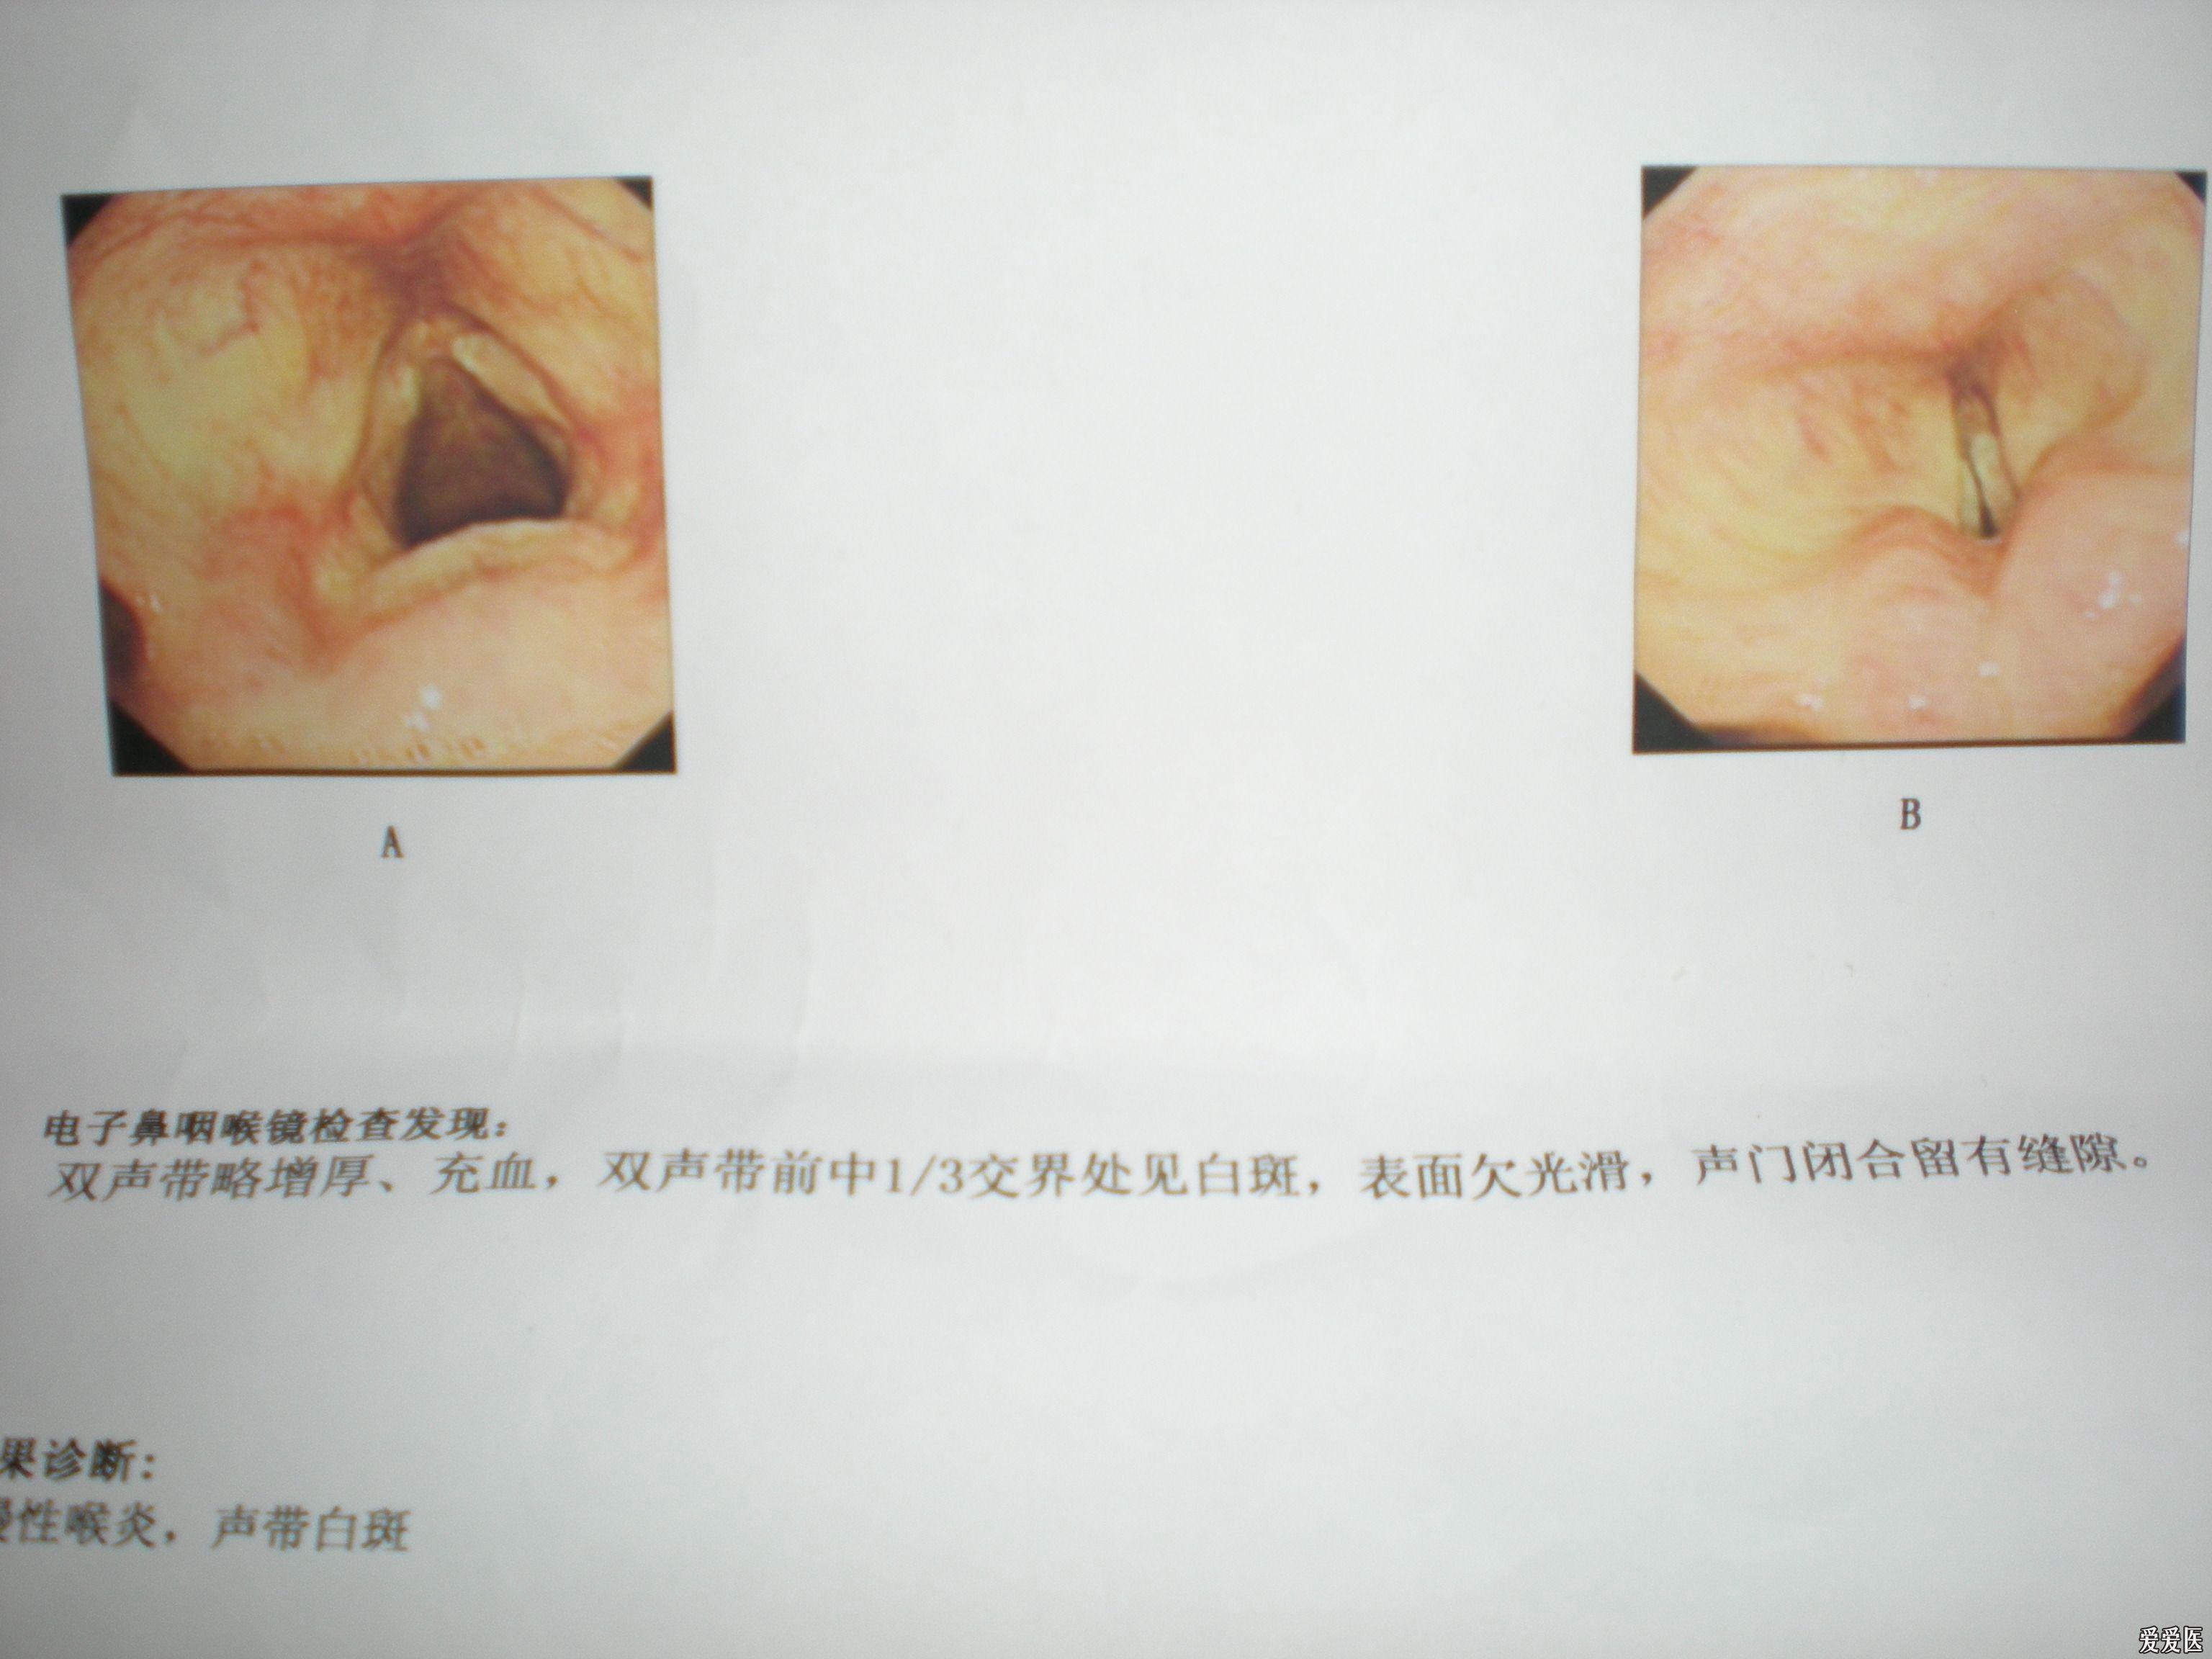 慢性咽喉炎图片喉镜图片